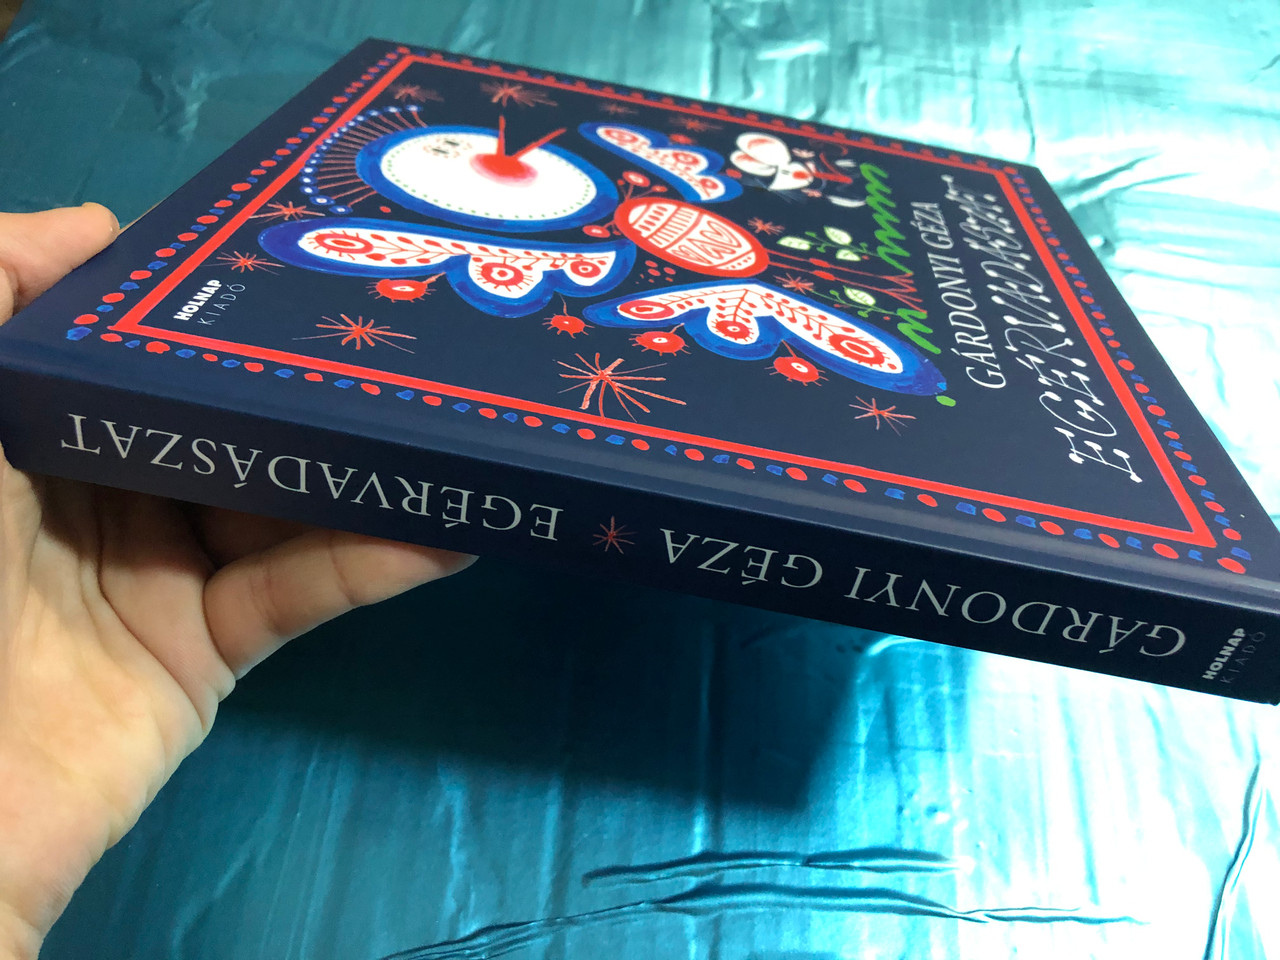 Egérvadászat by Gárdonyi Géza / Holnap kiadó 2014 / Hardcover / Mouse Hunt  - hungarian tales for children - bibleinmylanguage